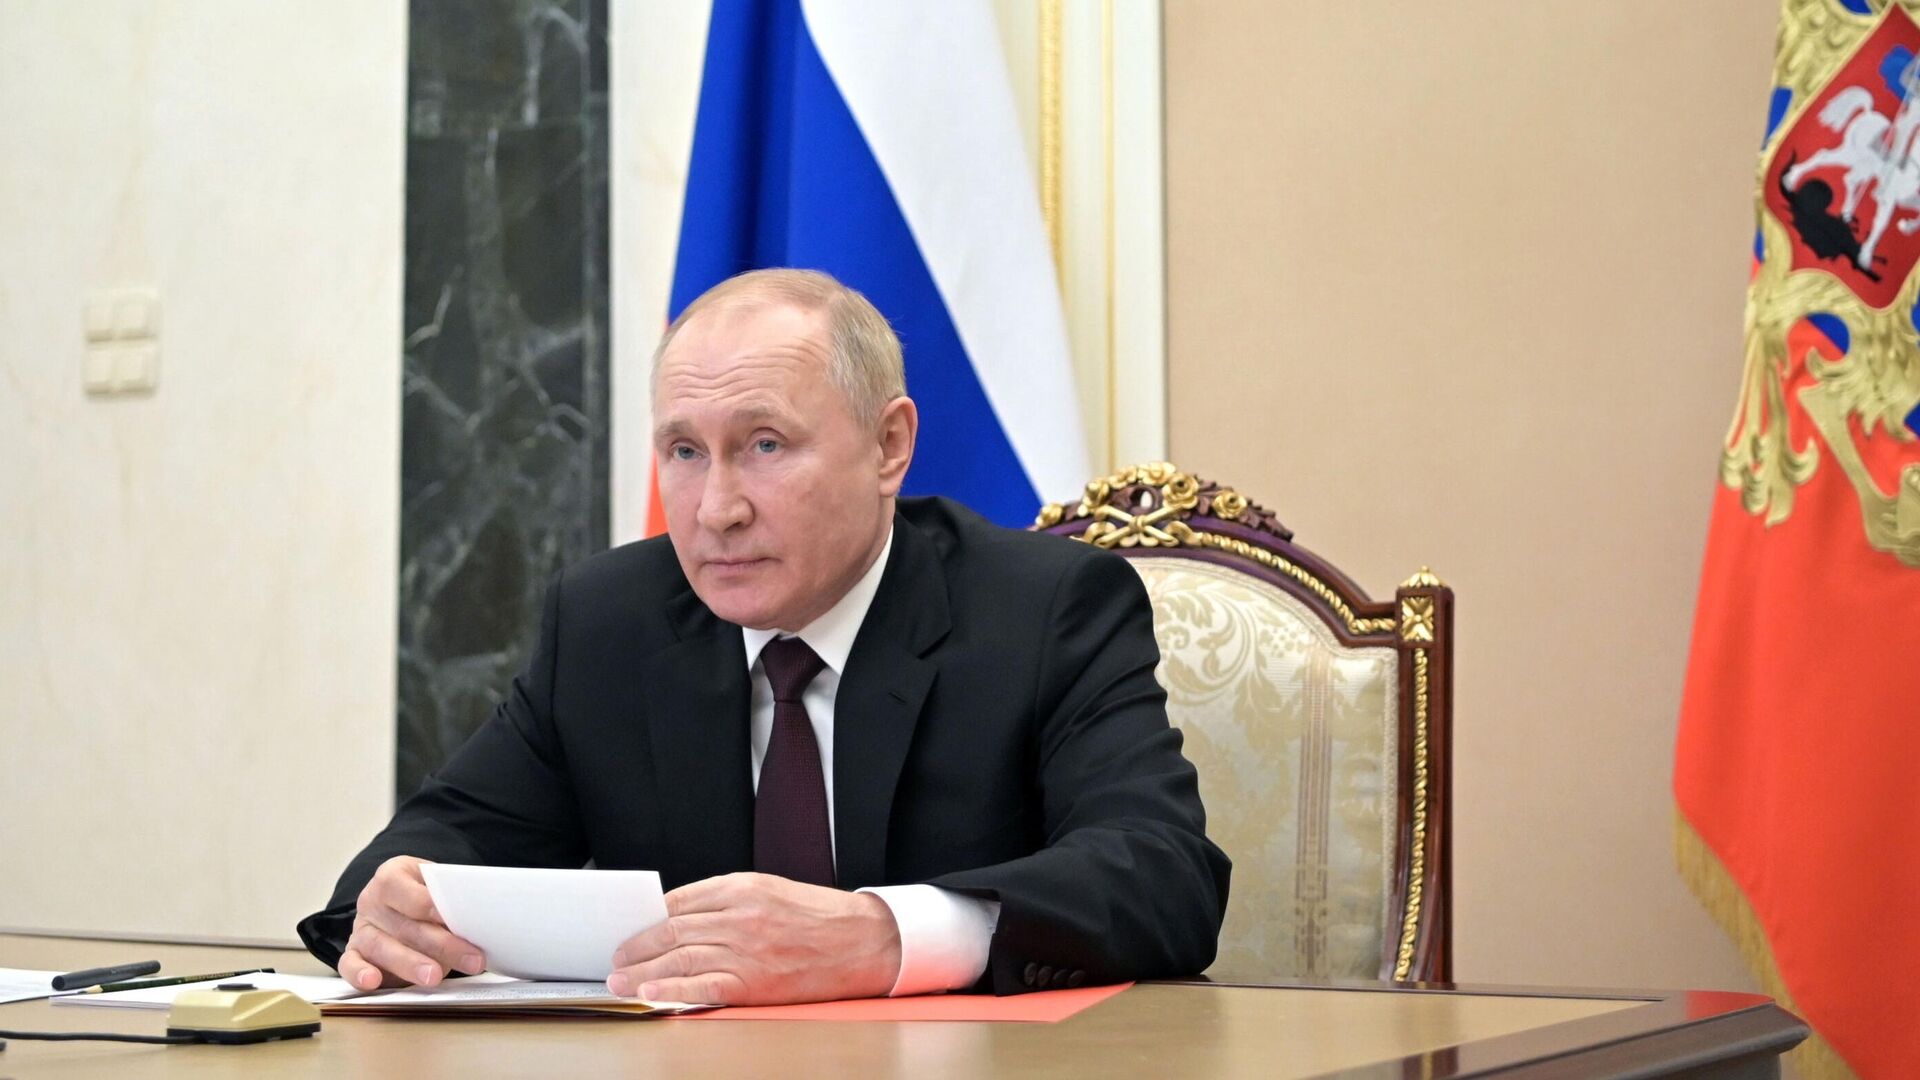 Путин наградил Небензю орденом "За заслуги перед Отечеством" IV степени